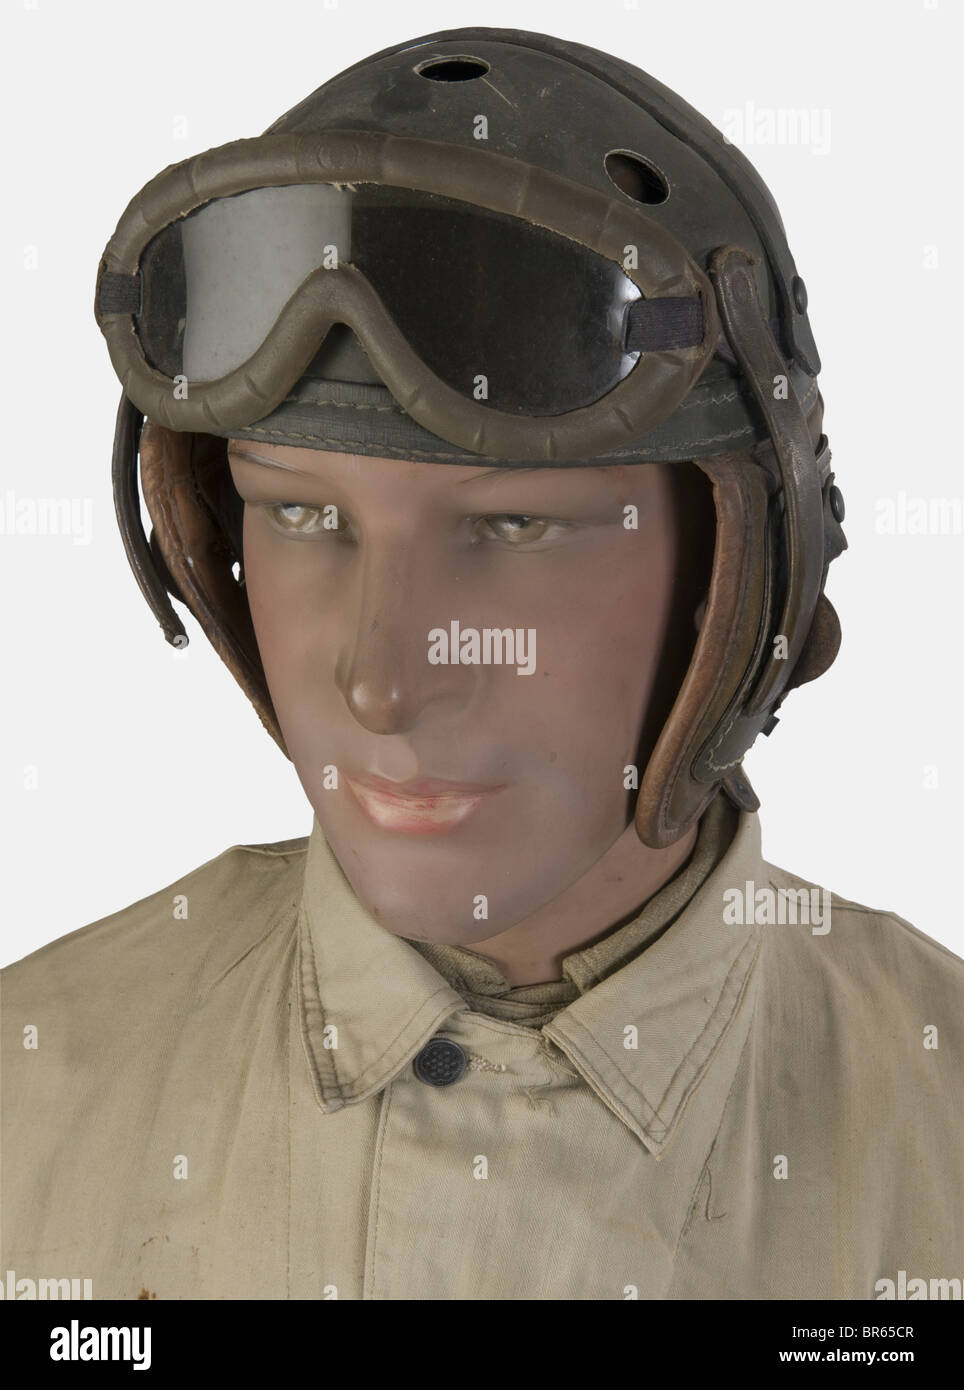 U.S.A, Tankiste de la 3ème Division Blindée US, sur mannequin, comprenant  un casque tankiste en fibre de couleur verte avec rabats d'oreilles et  lunettes verres rouges (écouteurs absents), une combinaison en toile